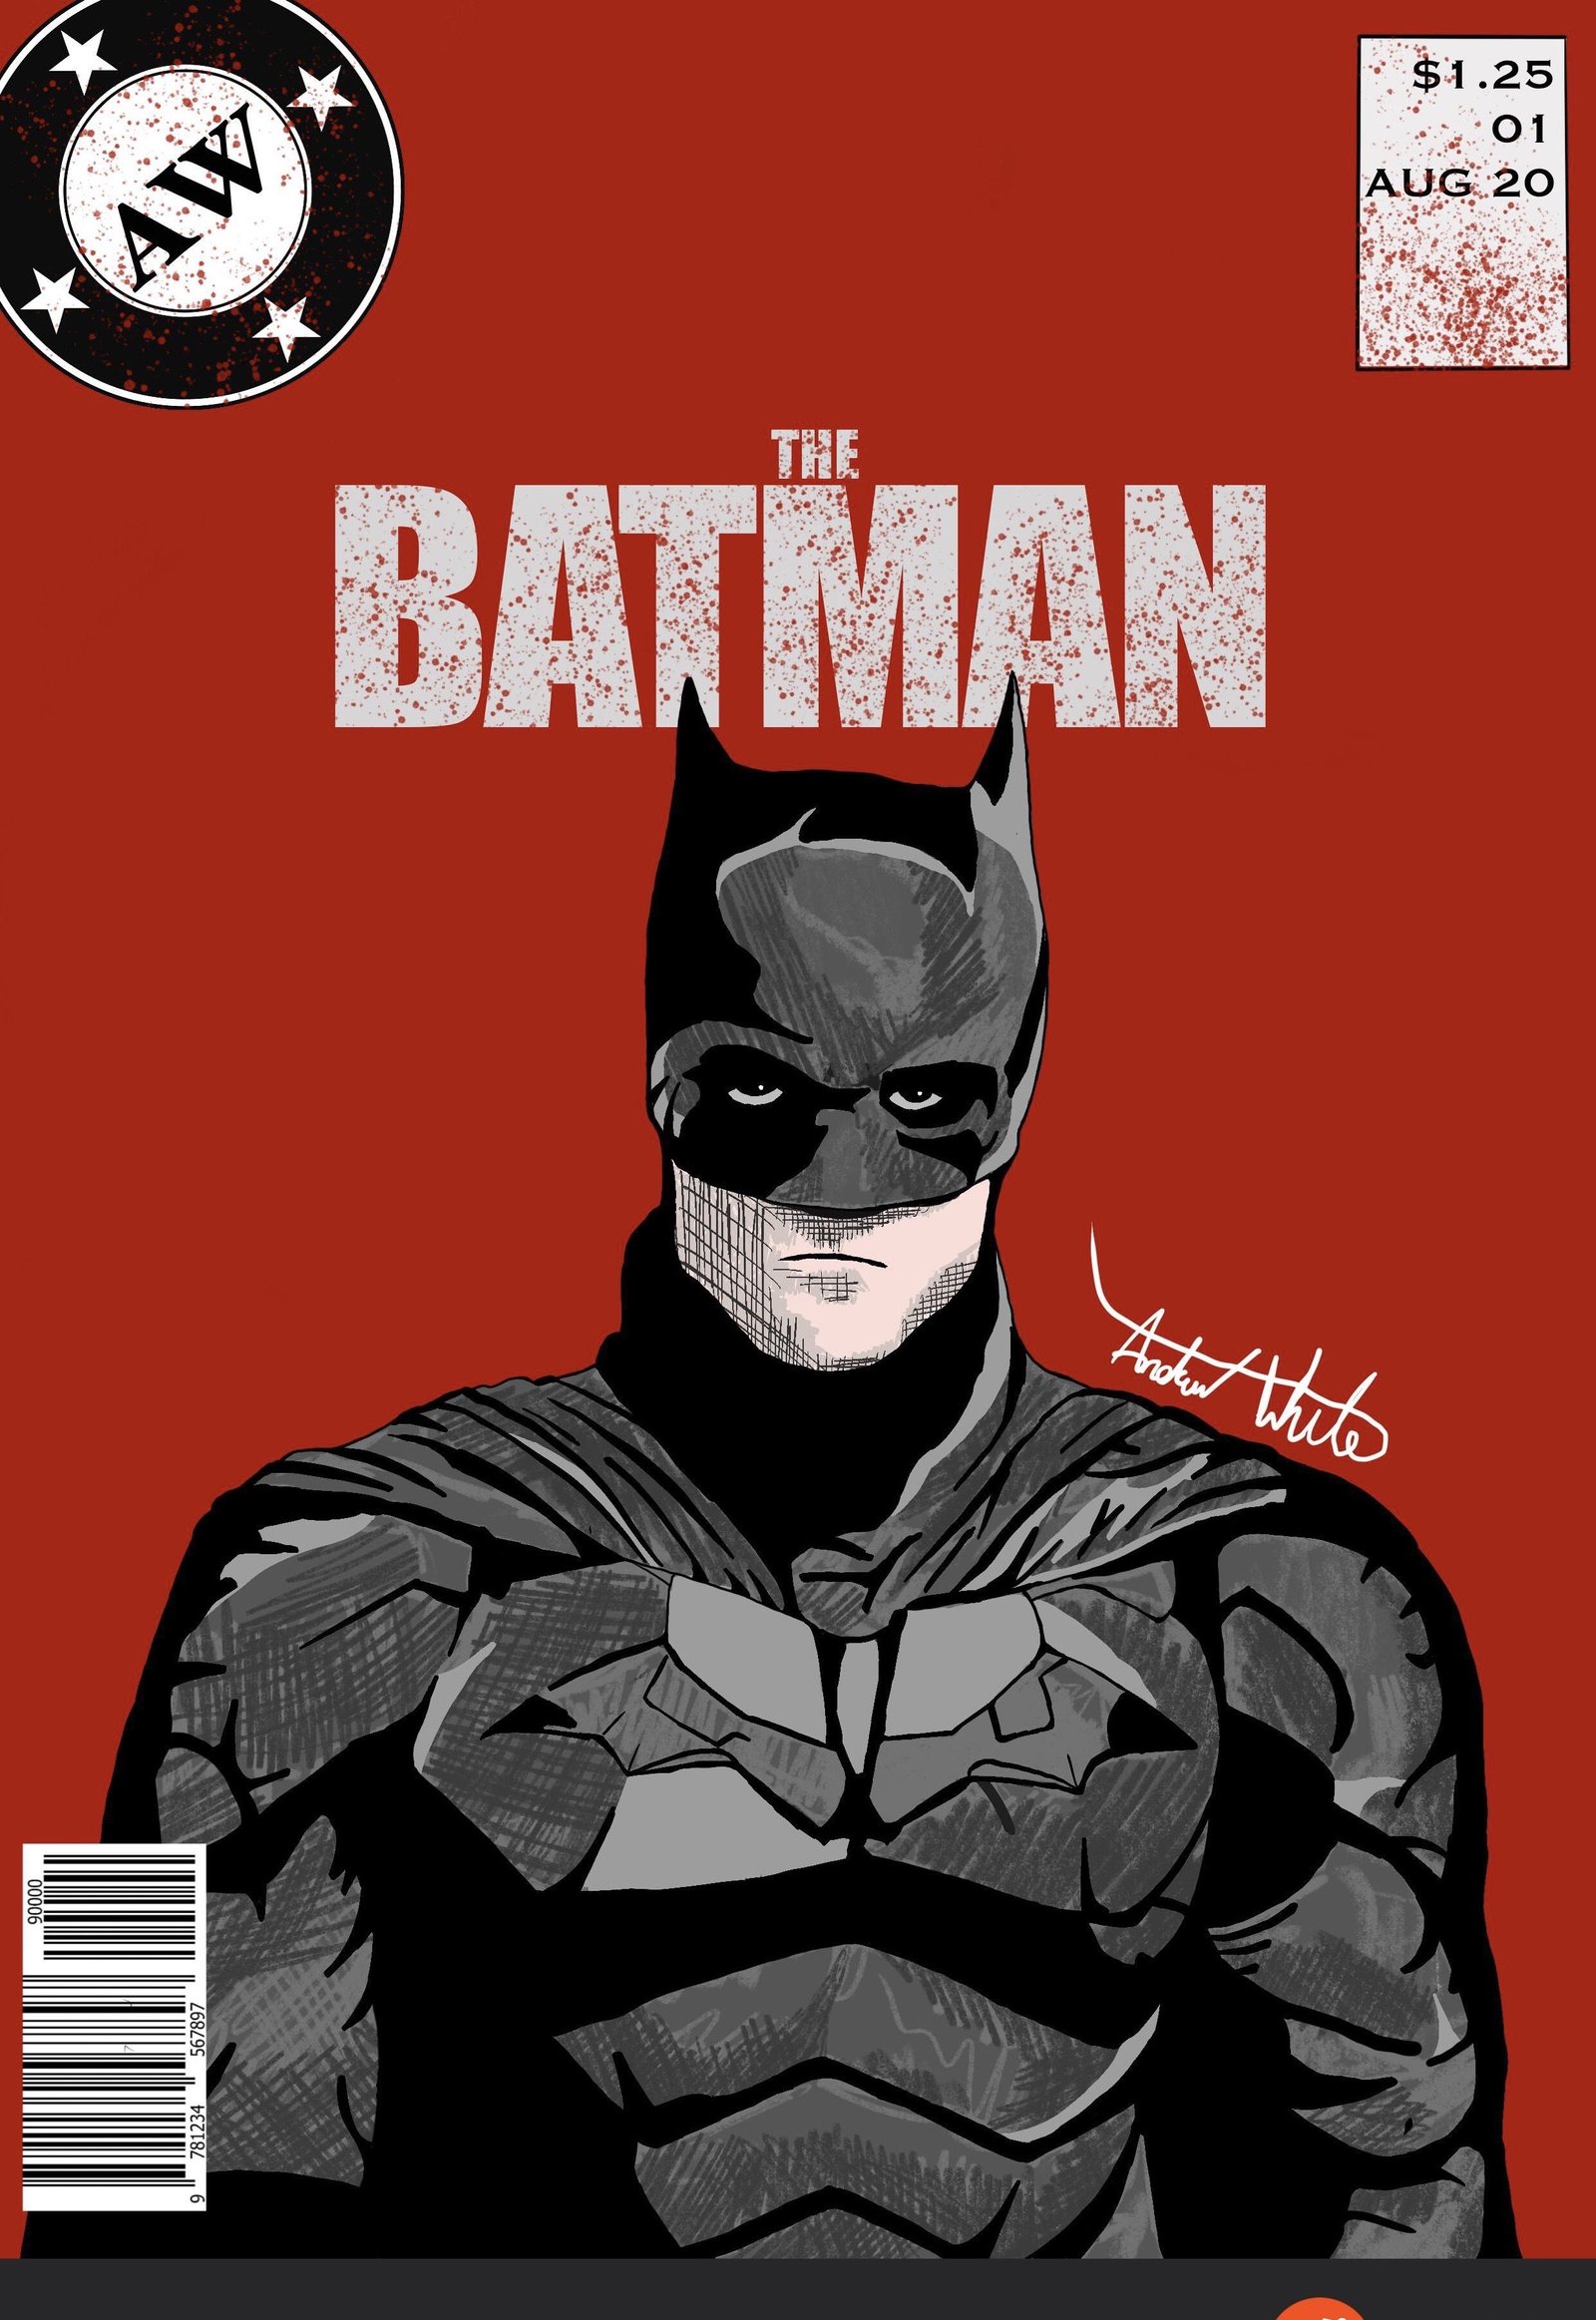 Batman Cartoon Wallpaper